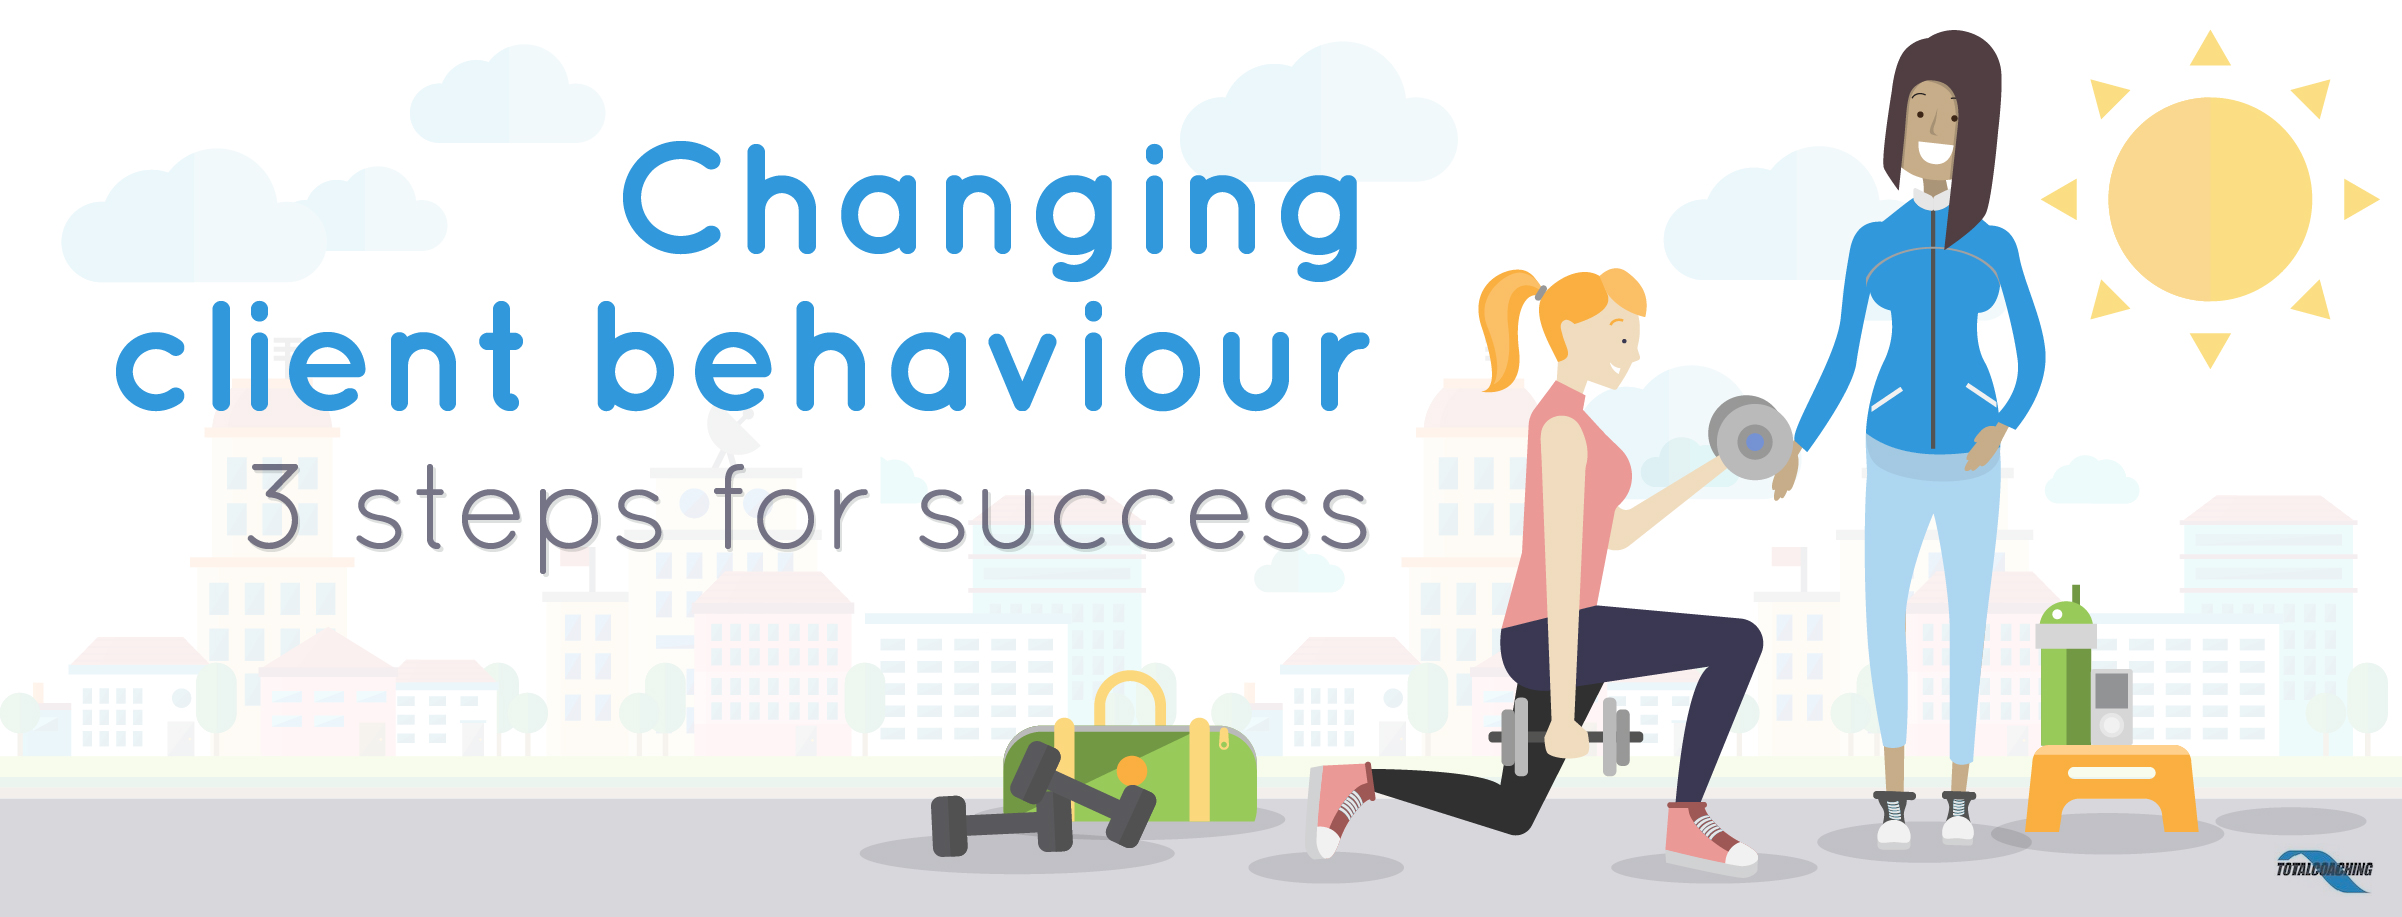 Change client behaviour